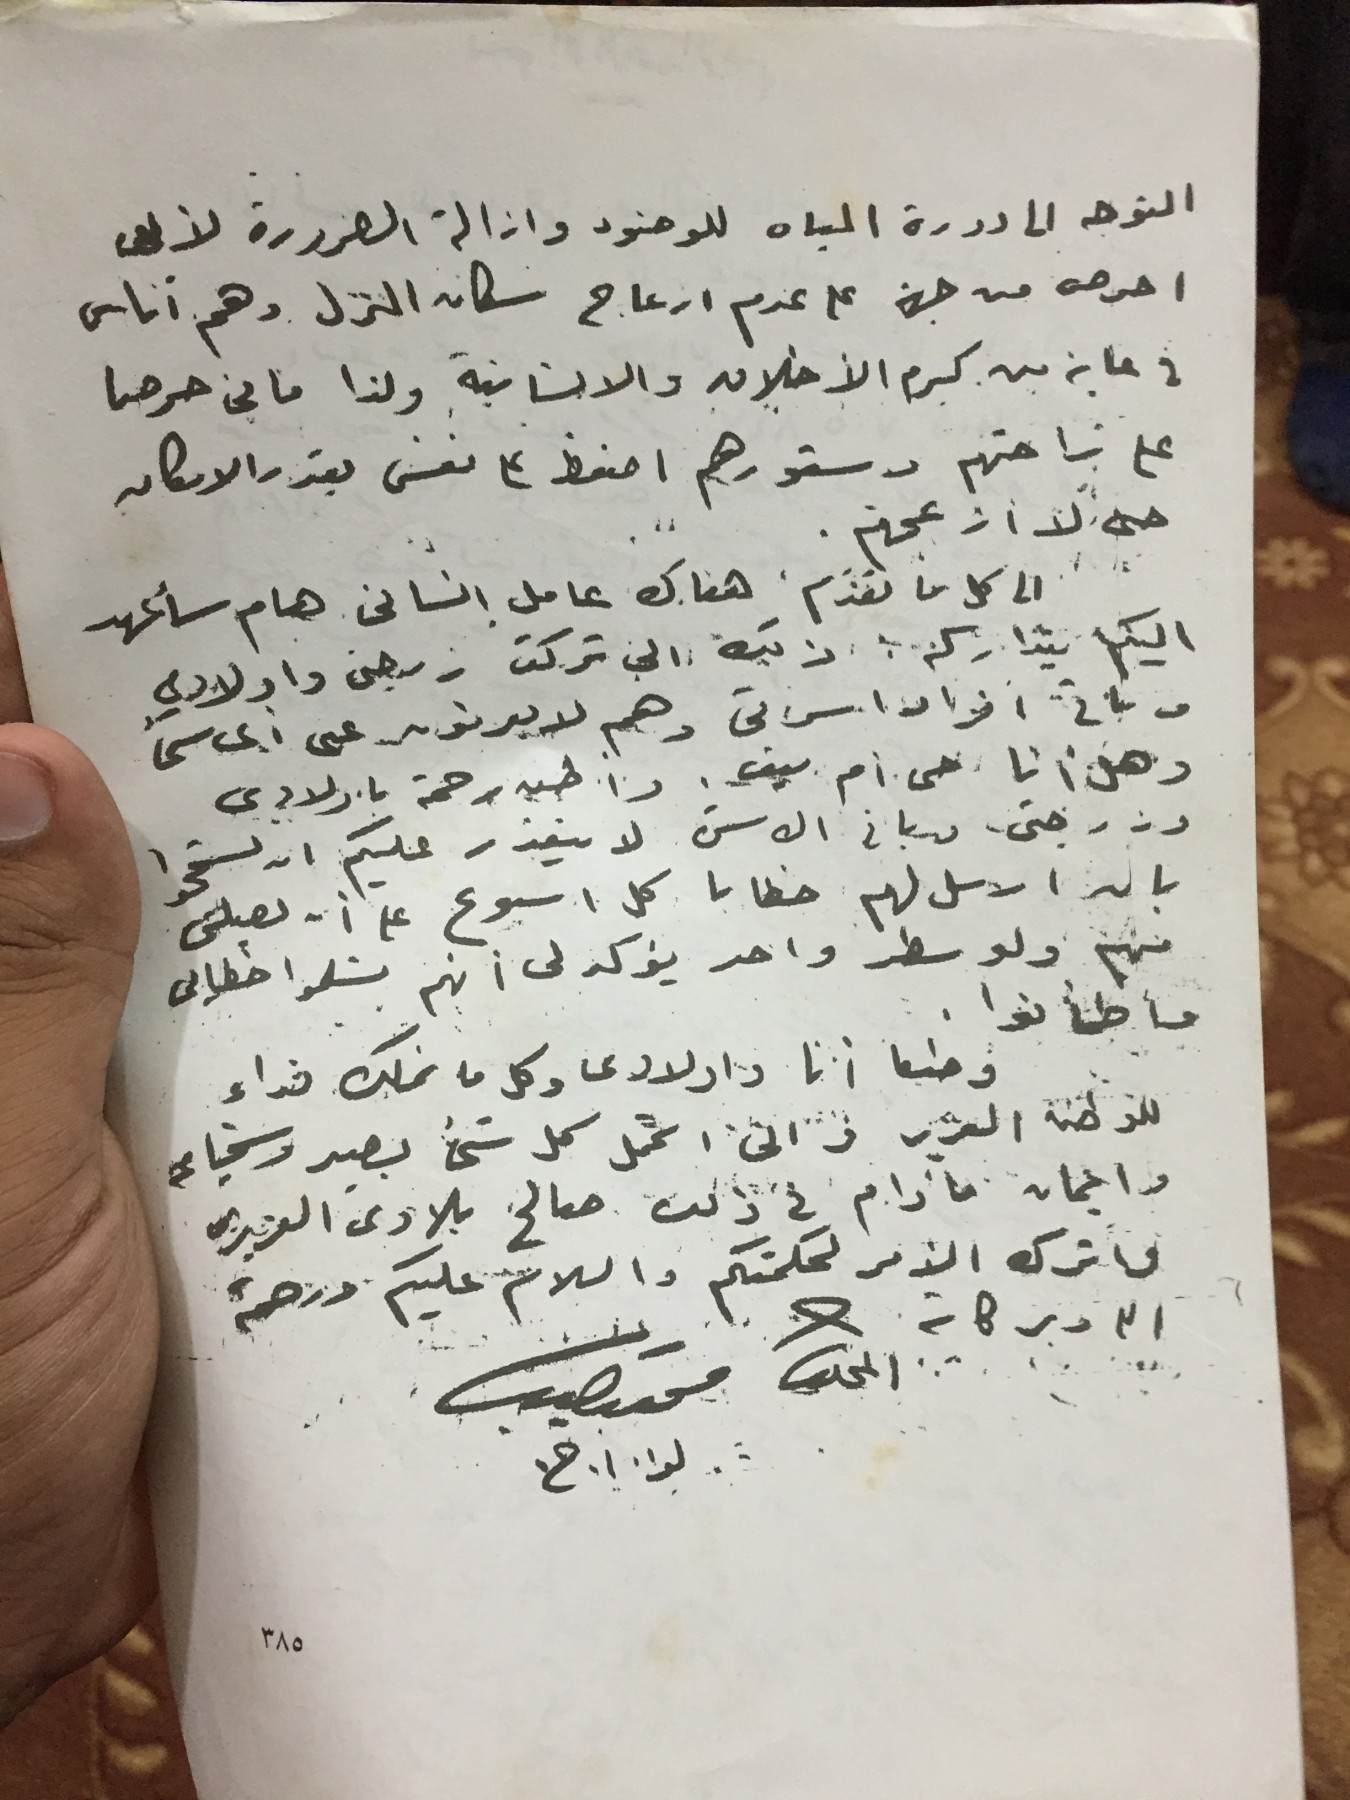  رسالة الرئيس محمد نجيب للرئيس جمال عبد الناصر (1)